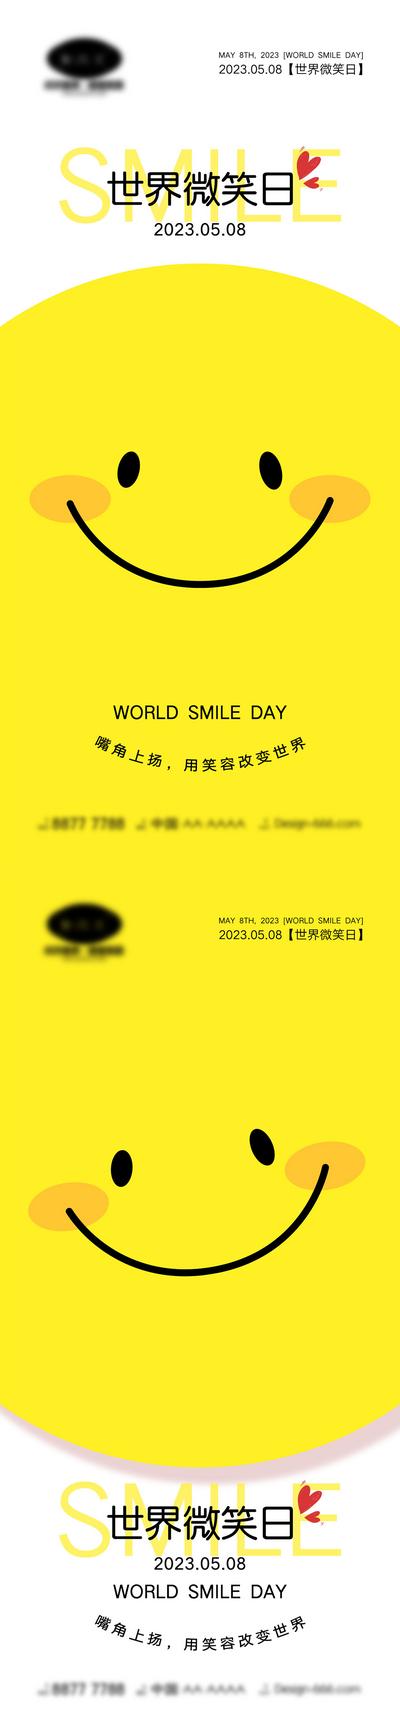 南门网 海报 创意 公立节日 世界微笑日 58 微笑日 笑脸 笑容 创新 简约 卡通 可爱